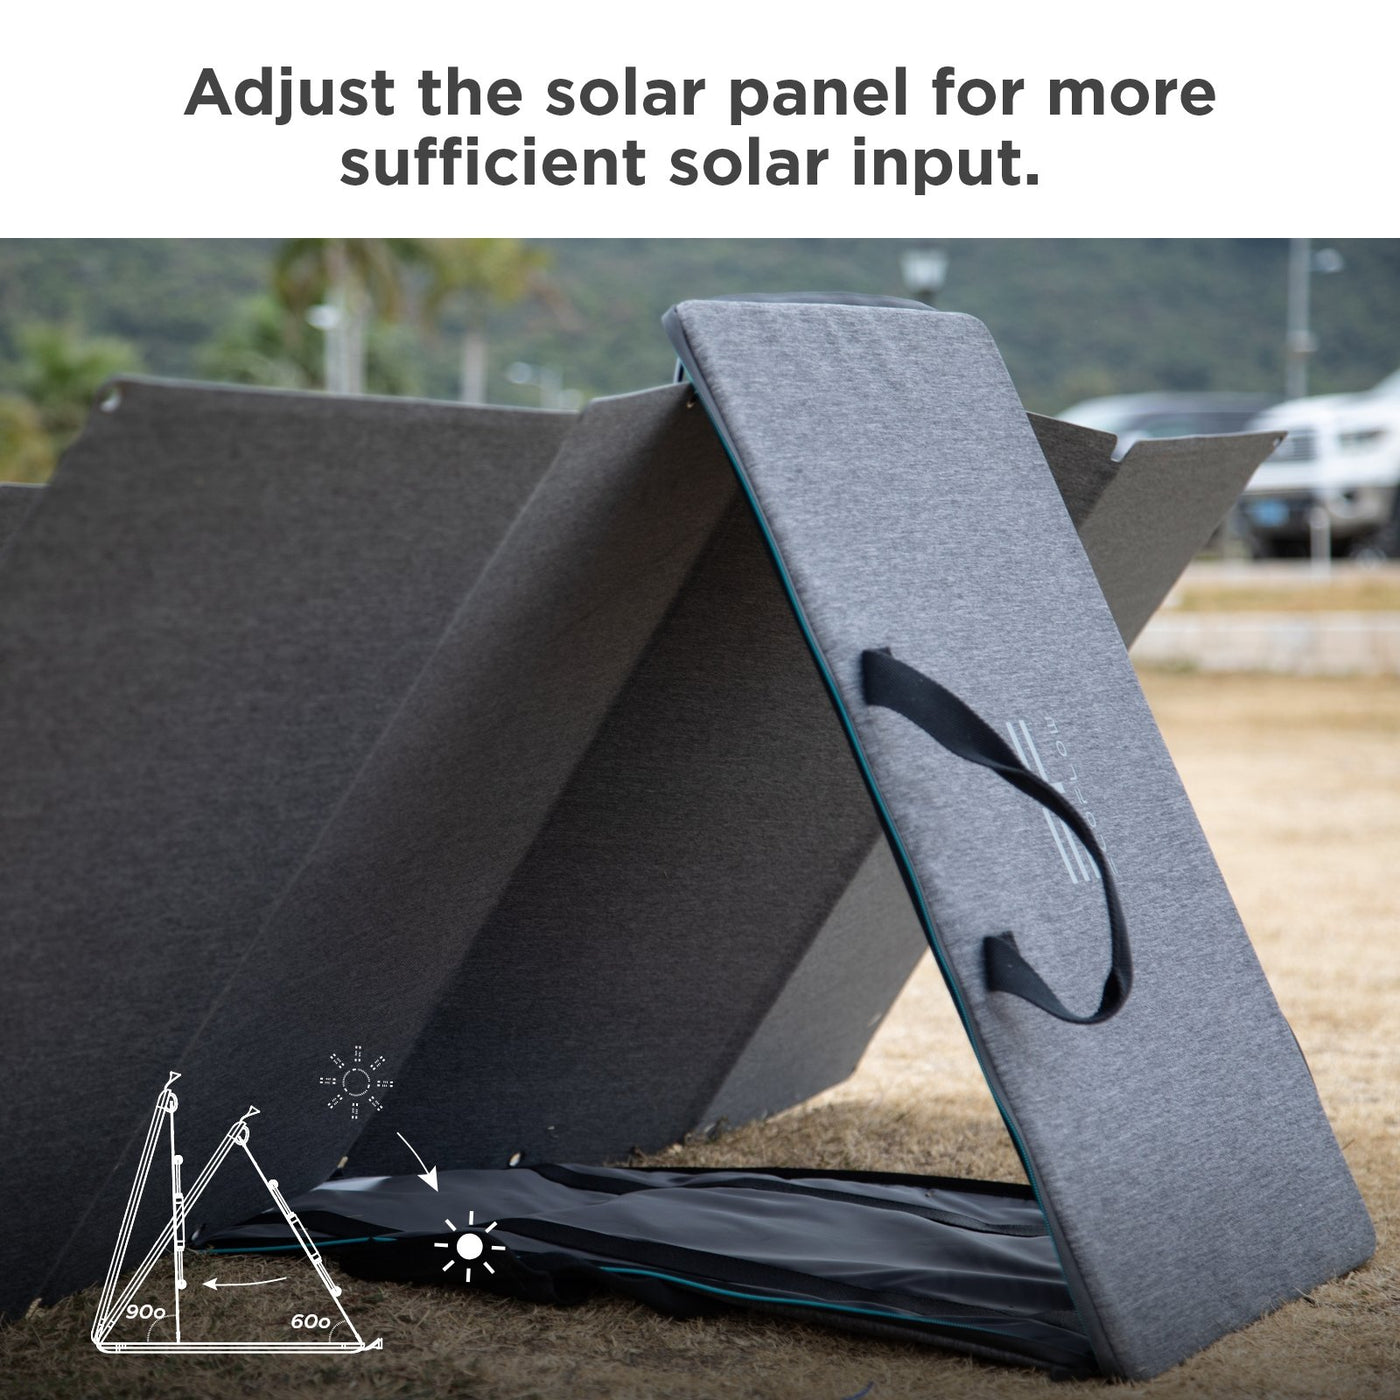 Ecoflow 160W Solarpanel die Funktion des Produkts anzeigen